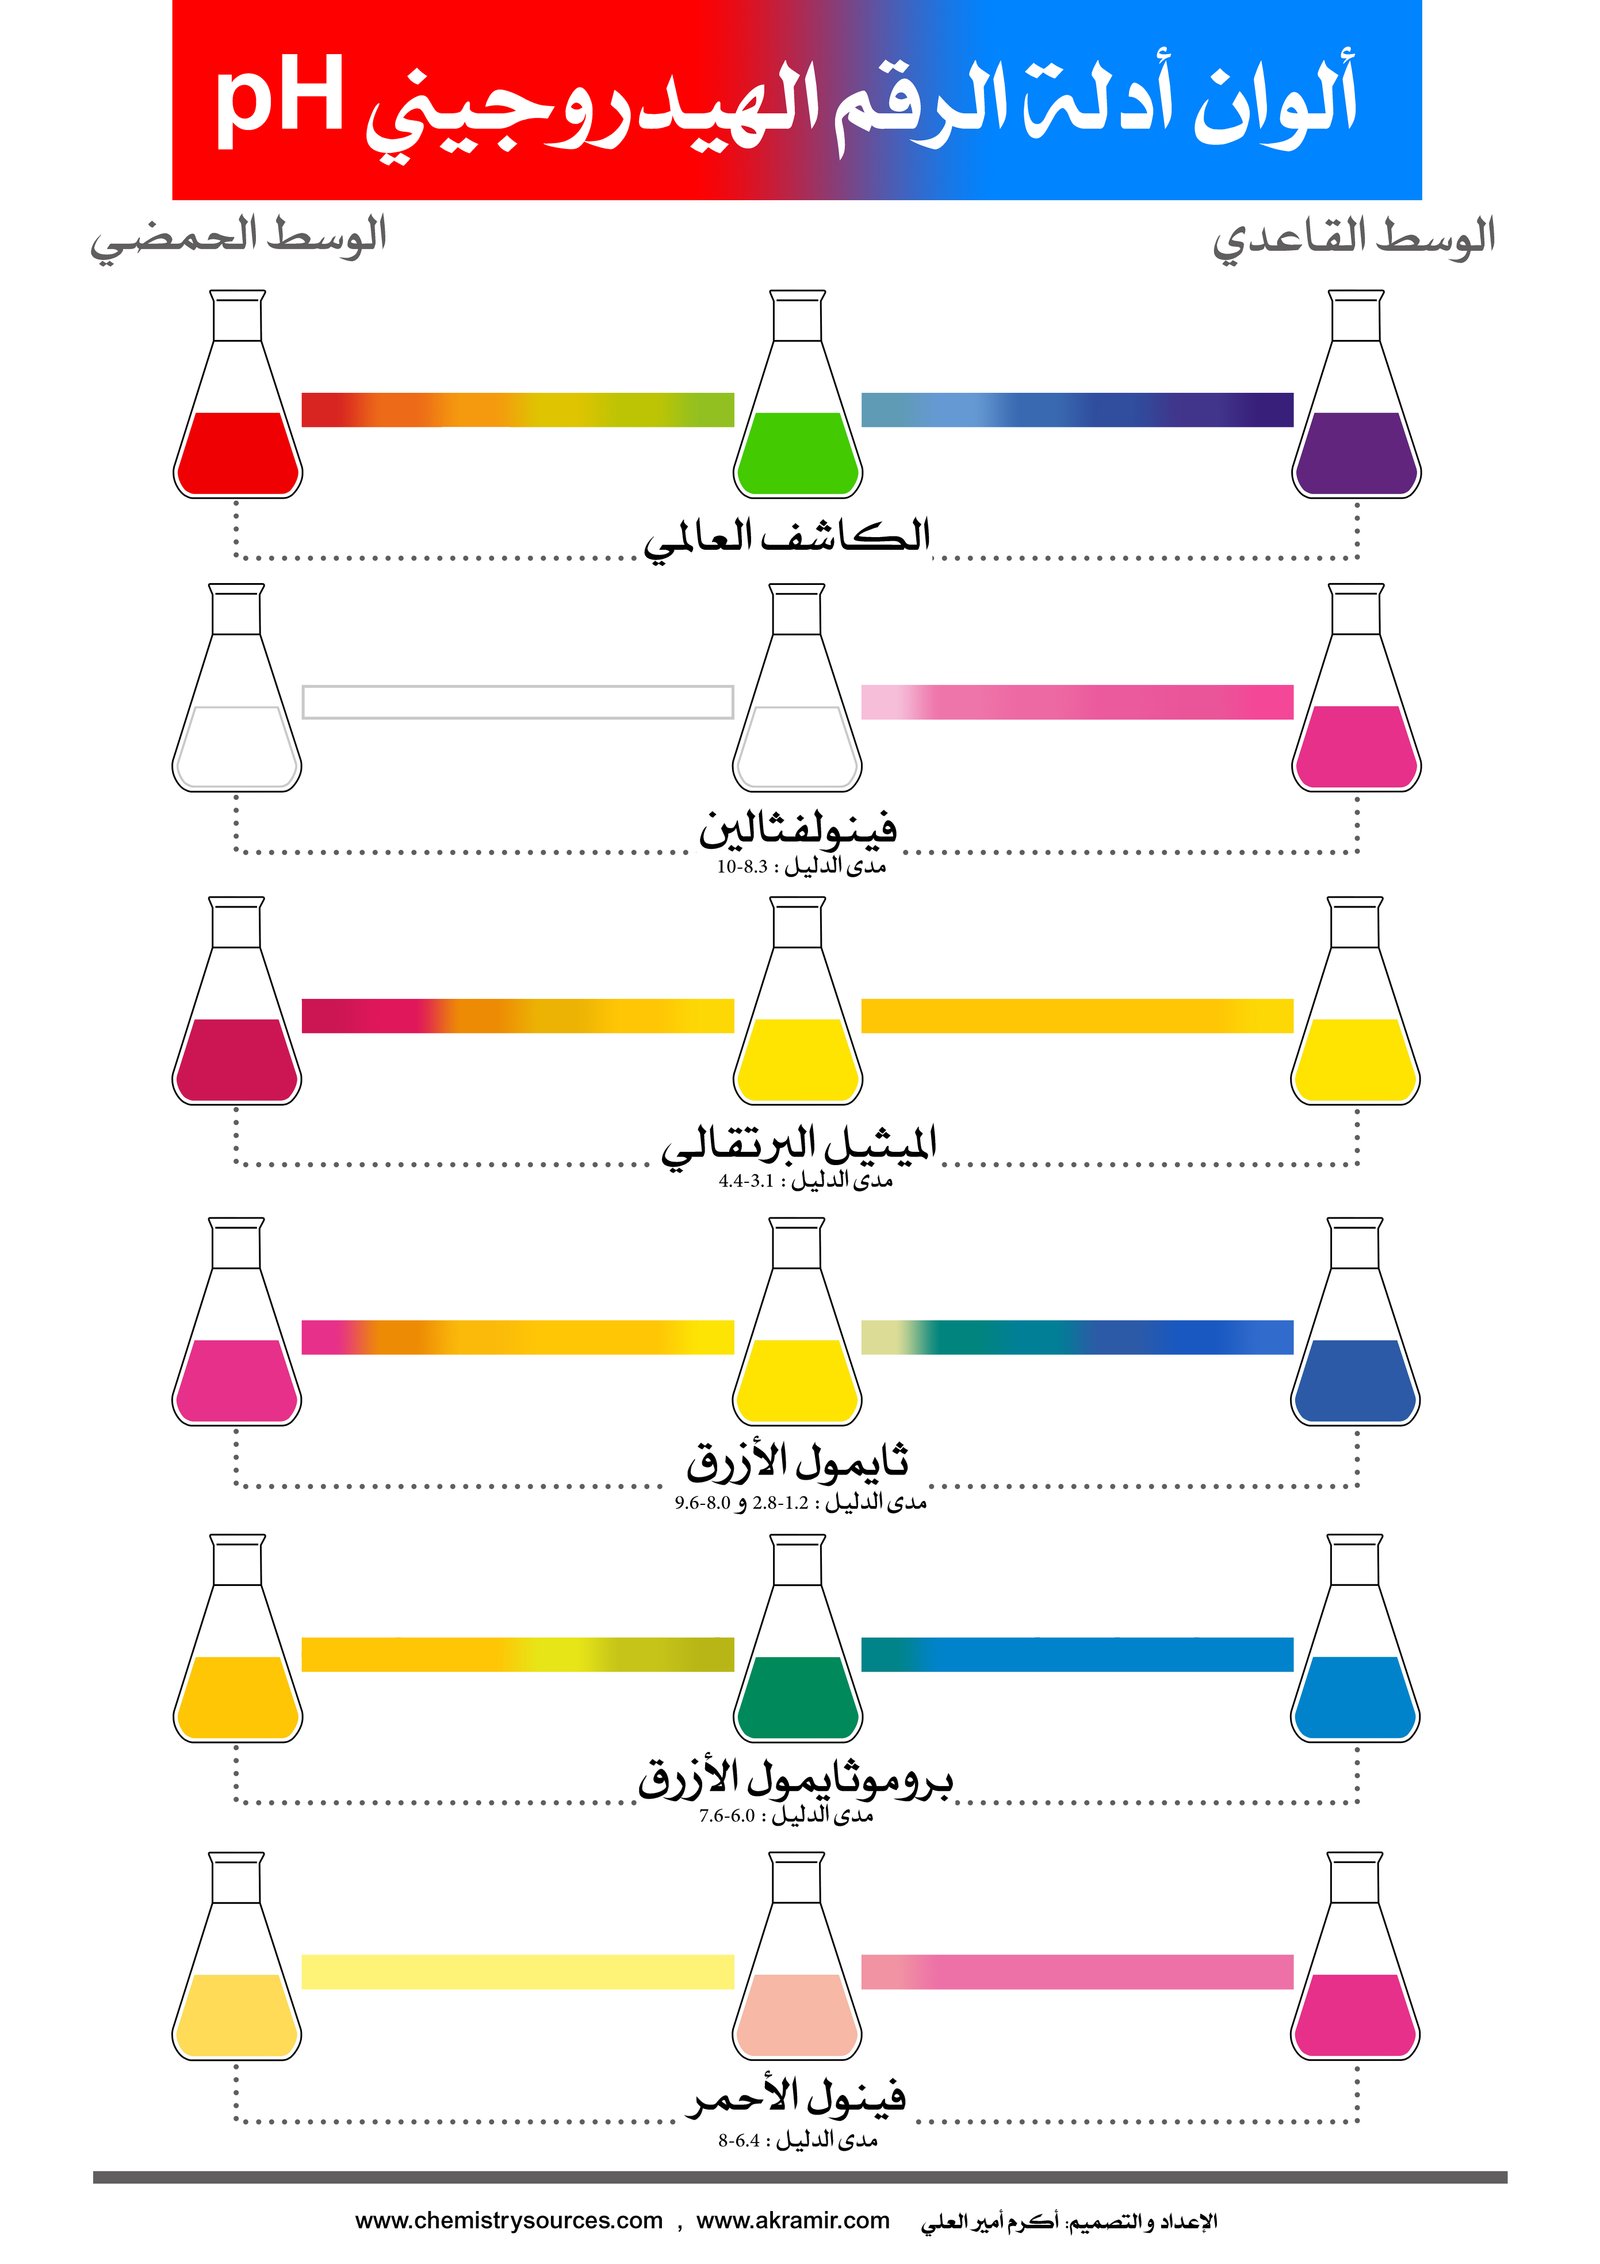 لوحات (بوسترات) كيميائية (6) - ألوان أدلة الرقم الهيدروجيني pH